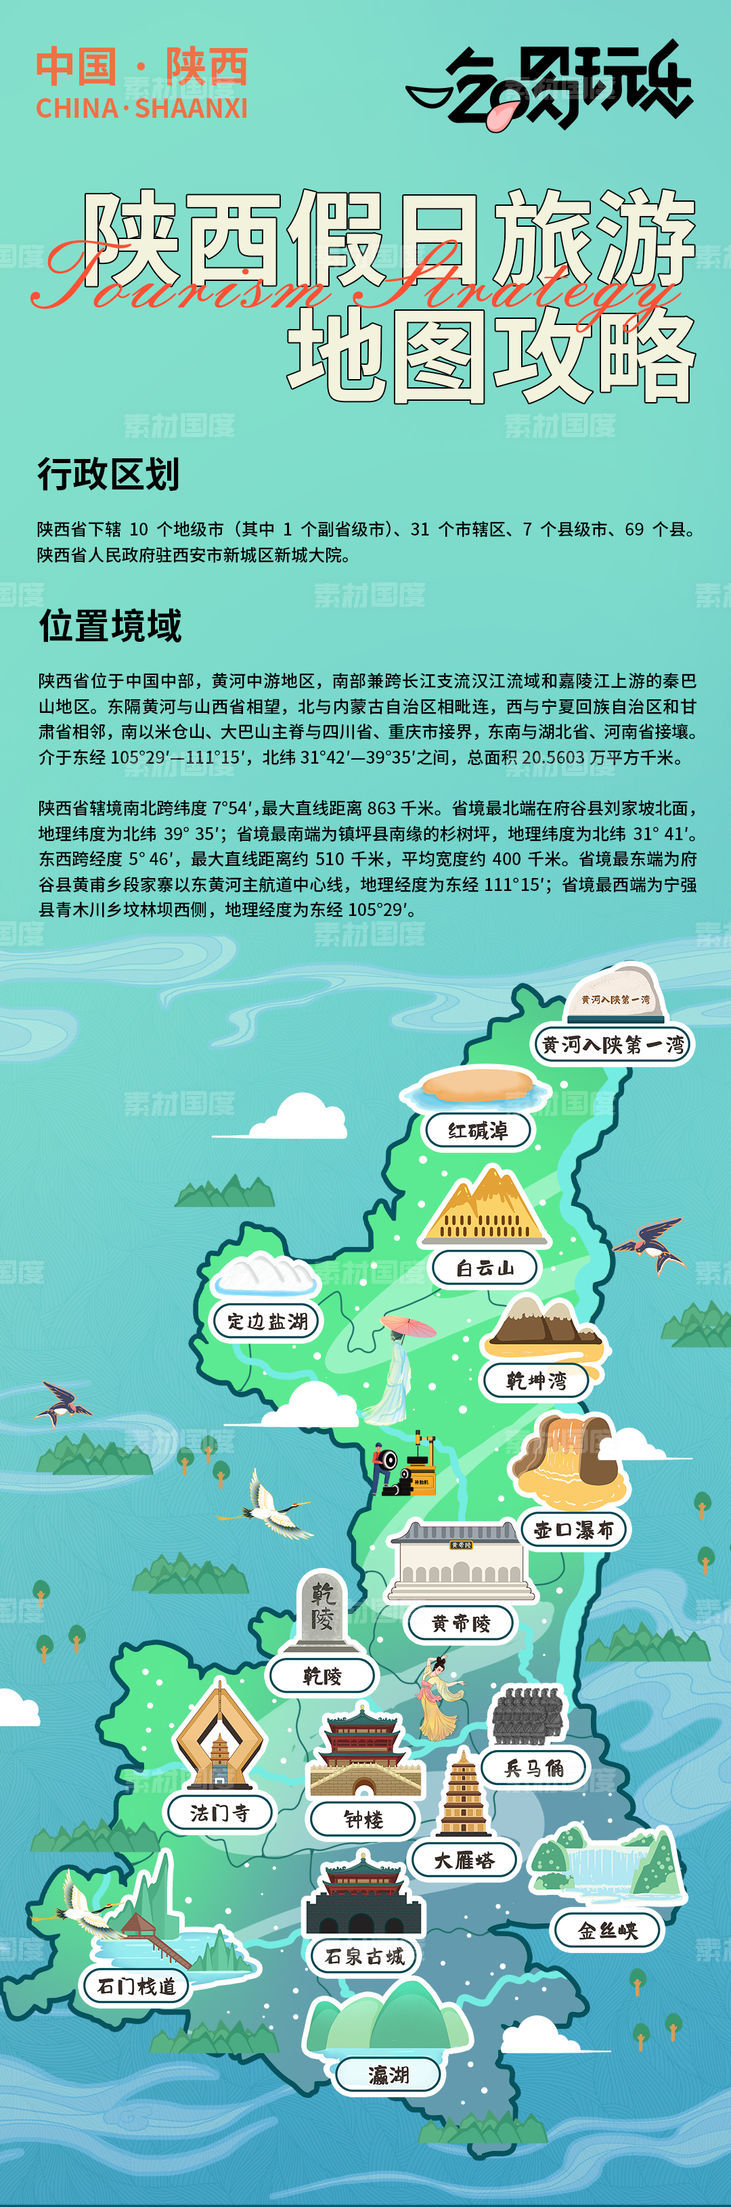 陕西假日旅游地图攻略海报